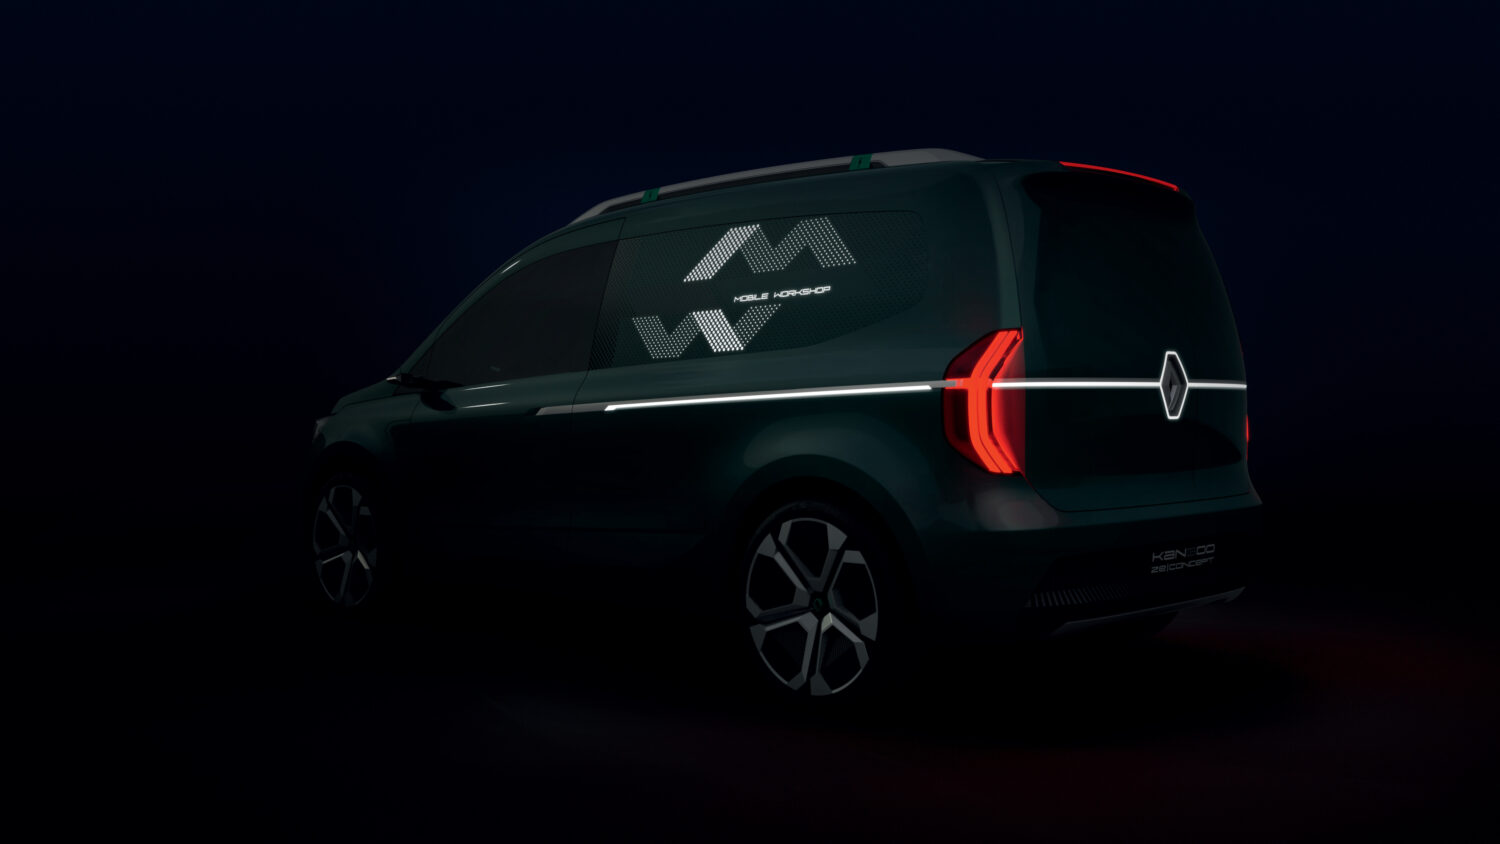 2019 - Kangoo Z.E. Concept Show-car